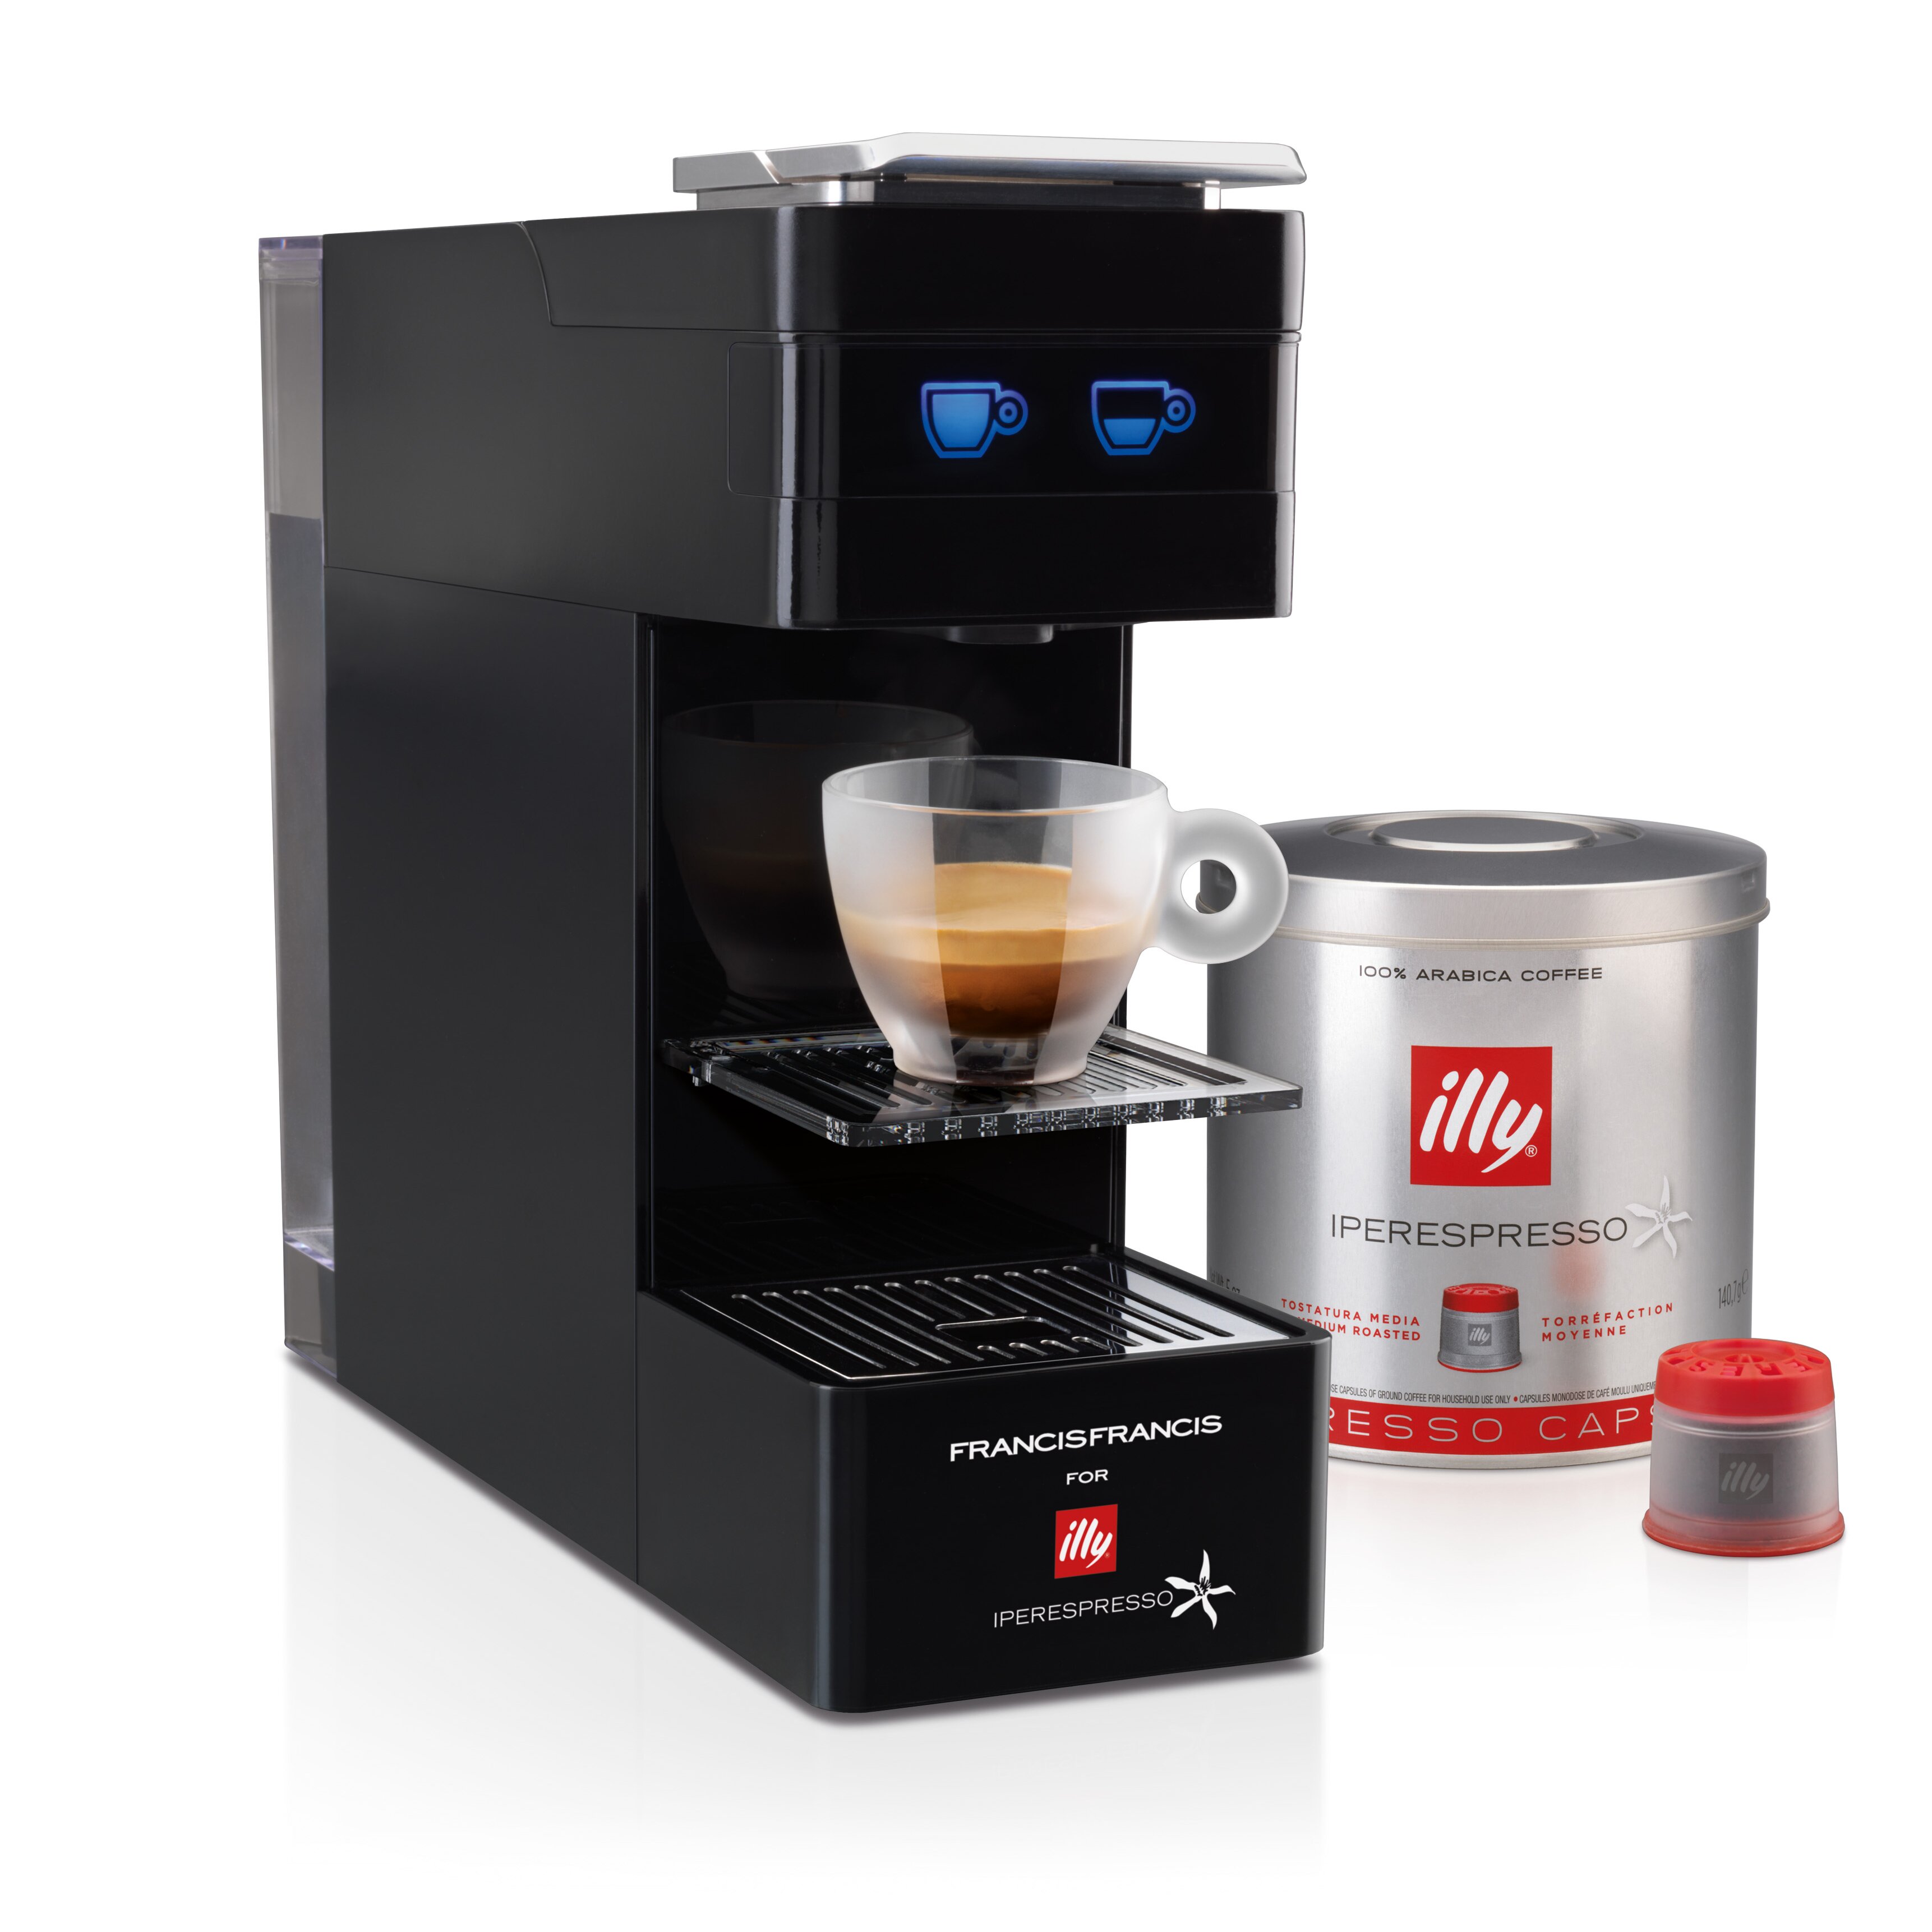 Illy coffee espresso machine